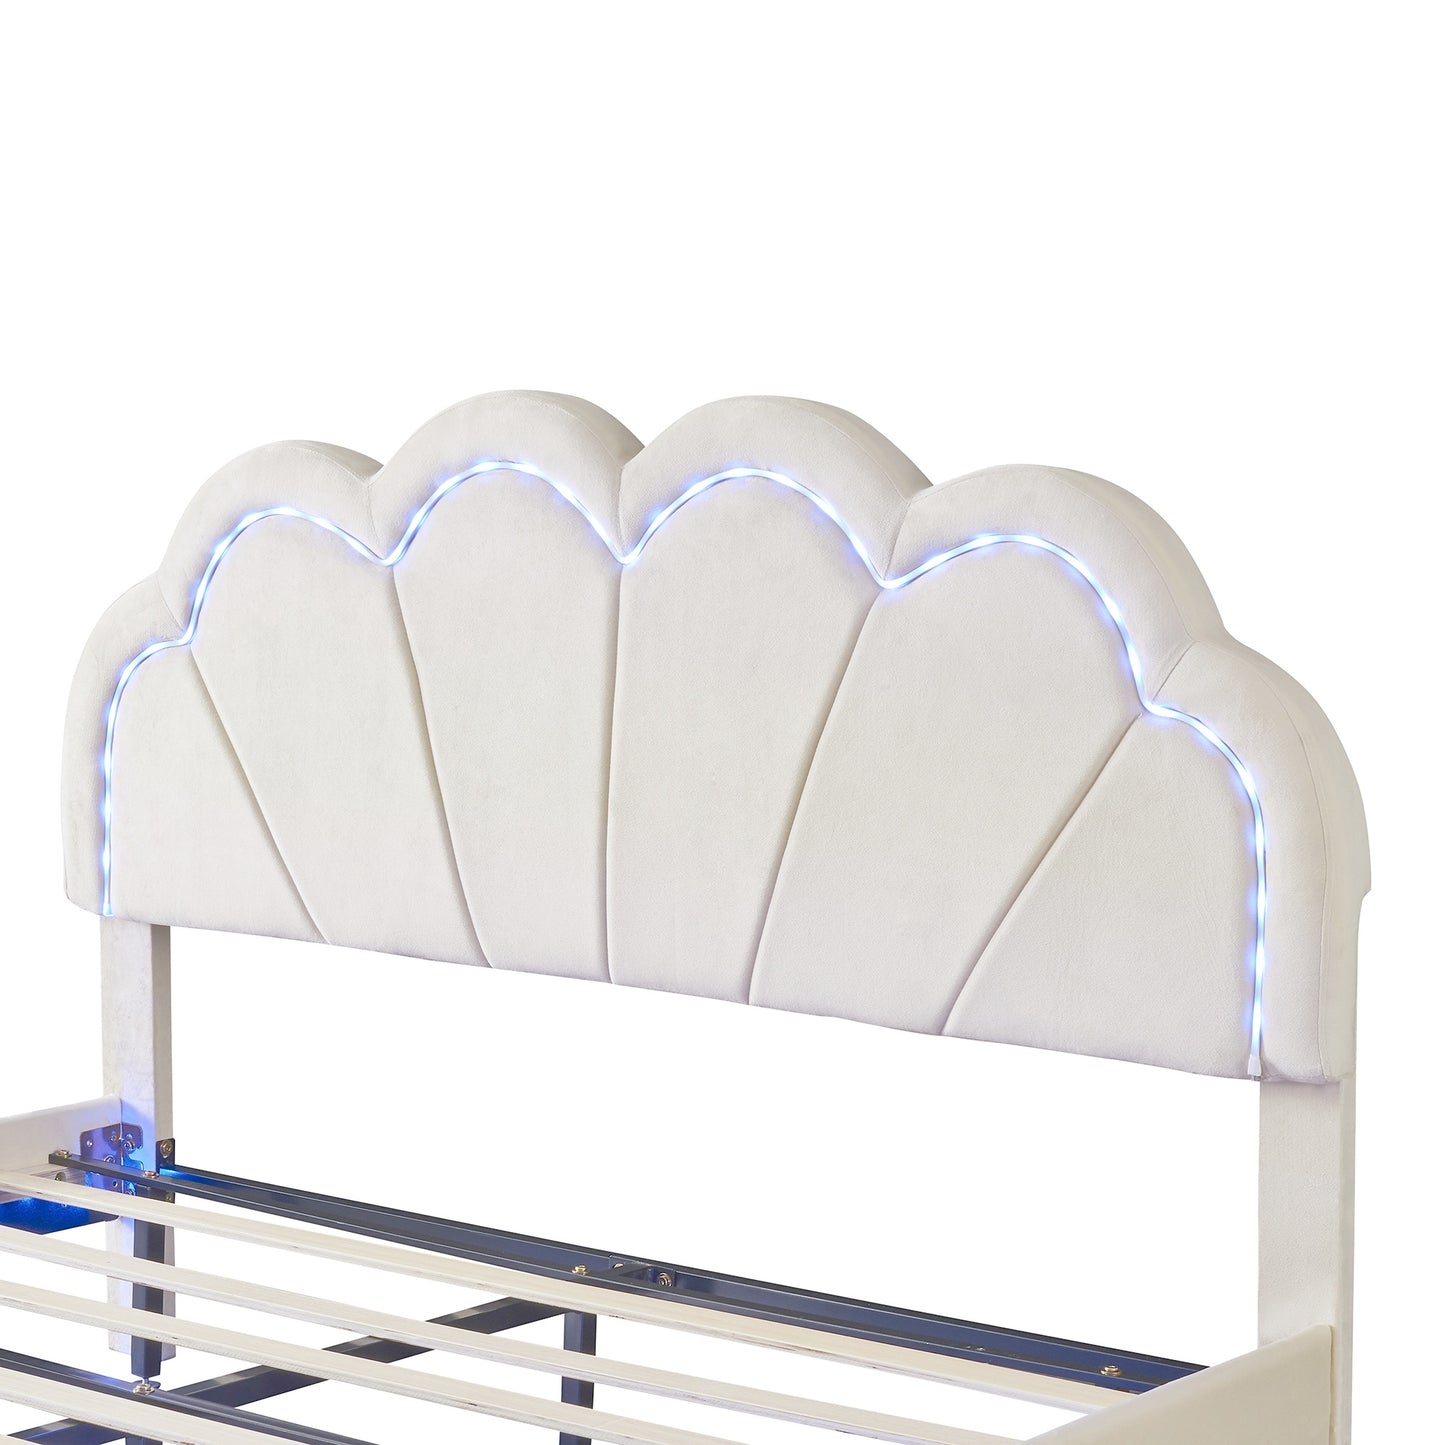 floating velvet elegant smart led platform bed